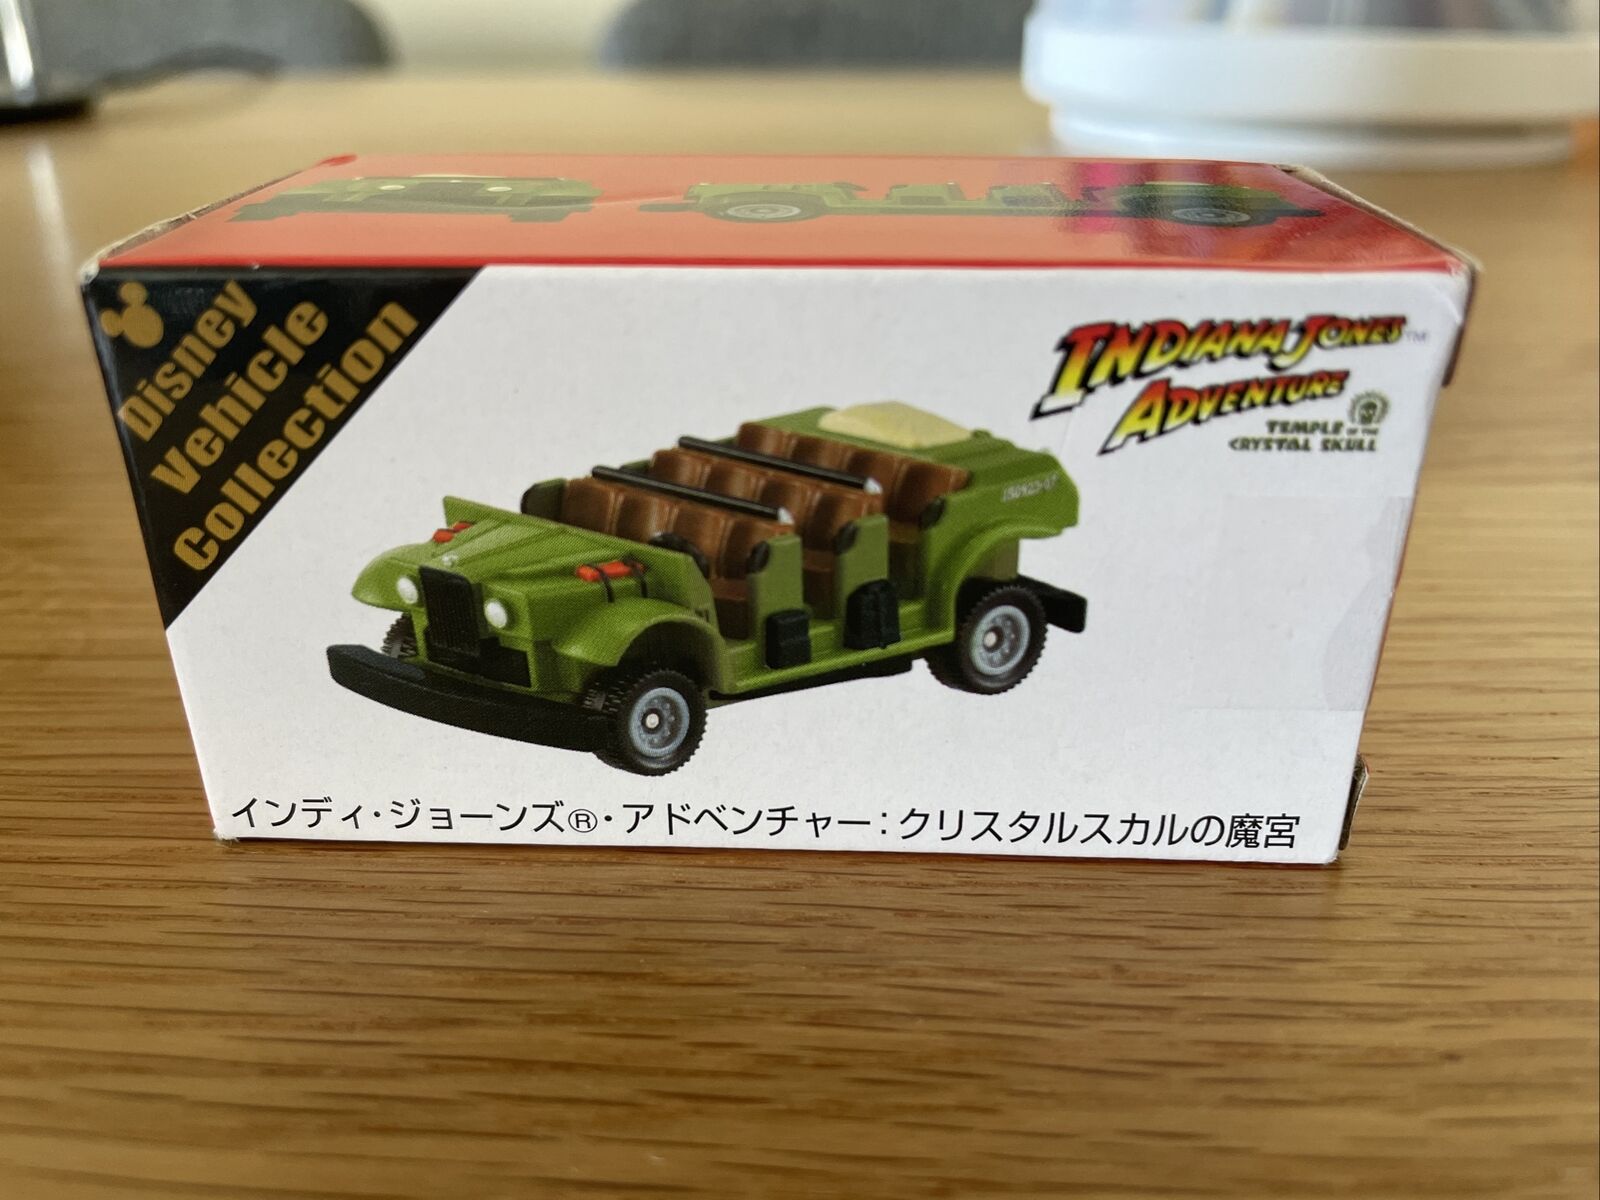 US SELLER Japan Tokyo Disney TOMICA Takara Tomy Indiana Jones Toy Car Vehicle